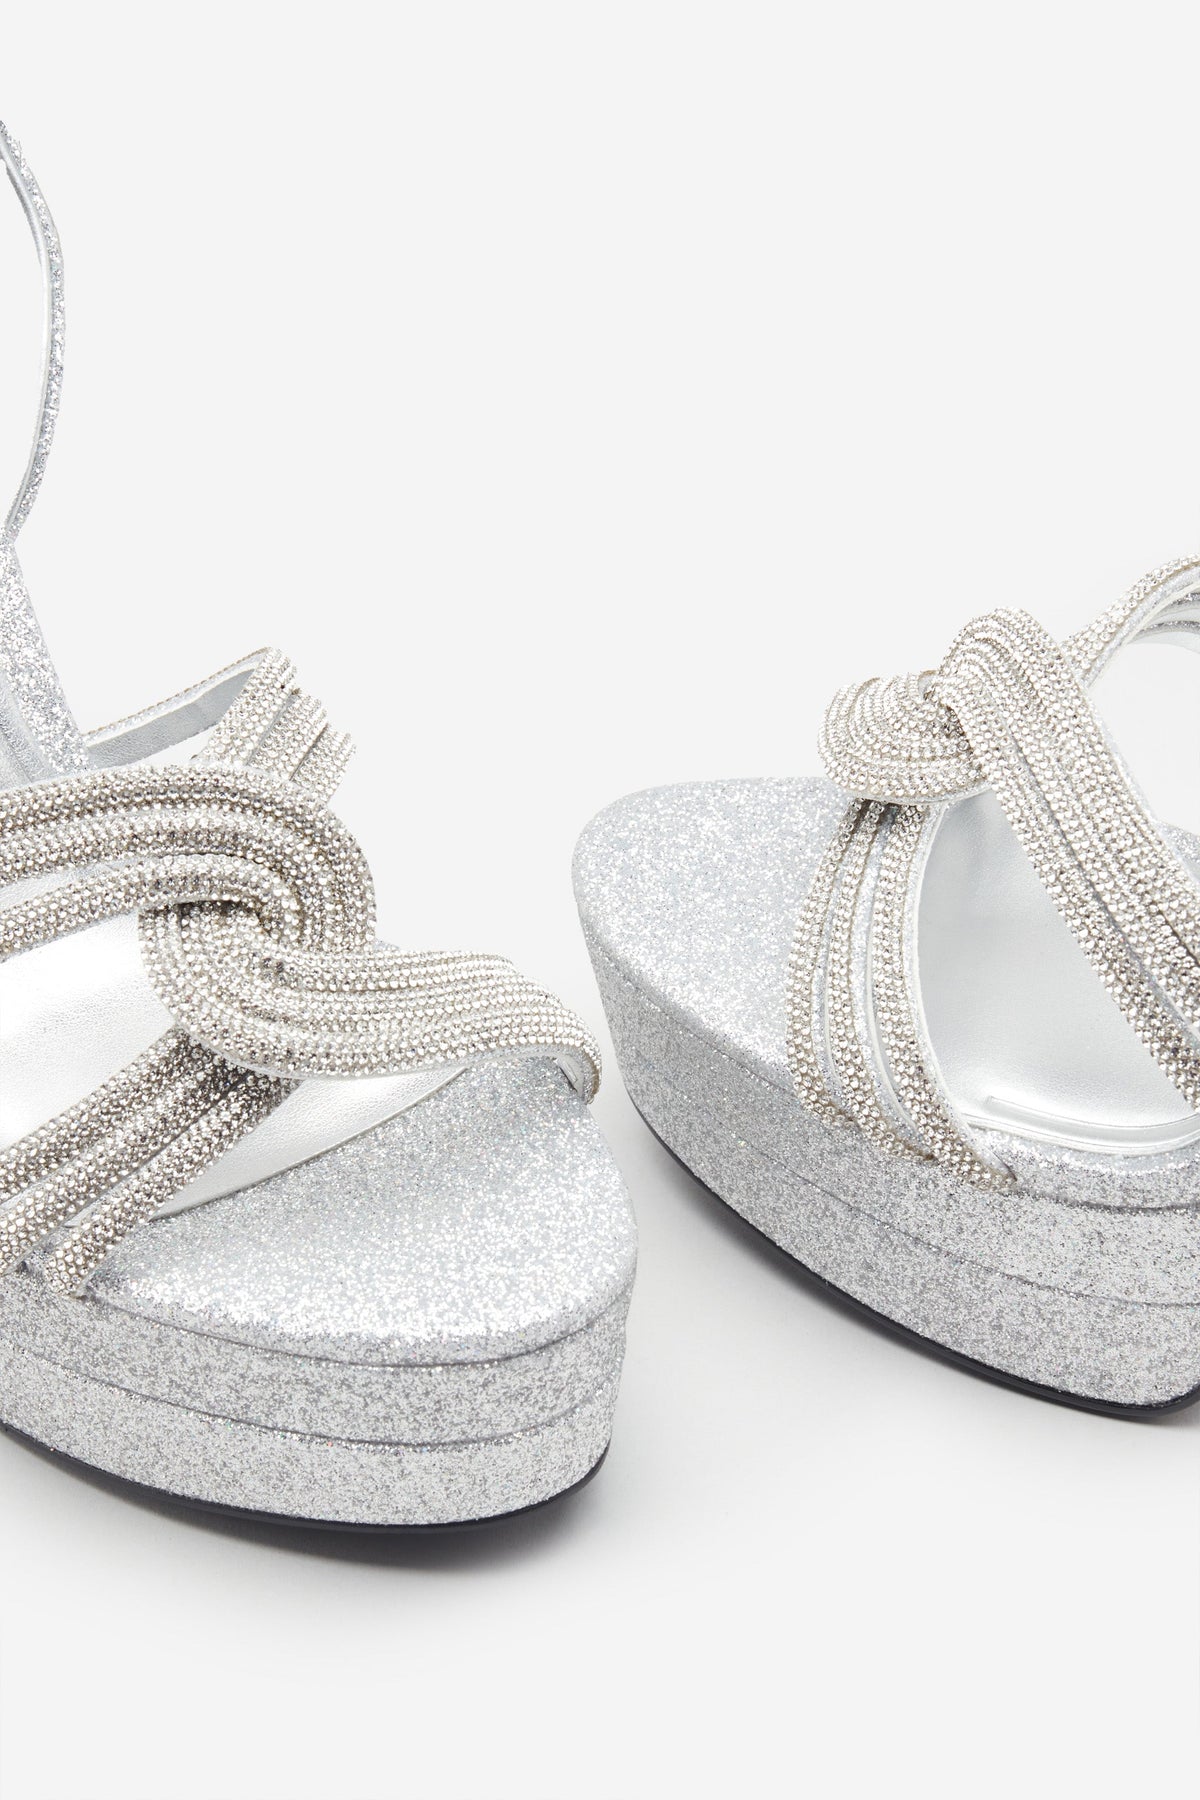 Shellys London Slingback Peep Toe Shoes High Heel Platform Silver Sequin -  Ladies Footwear from Jenny-Wren Footwear UK